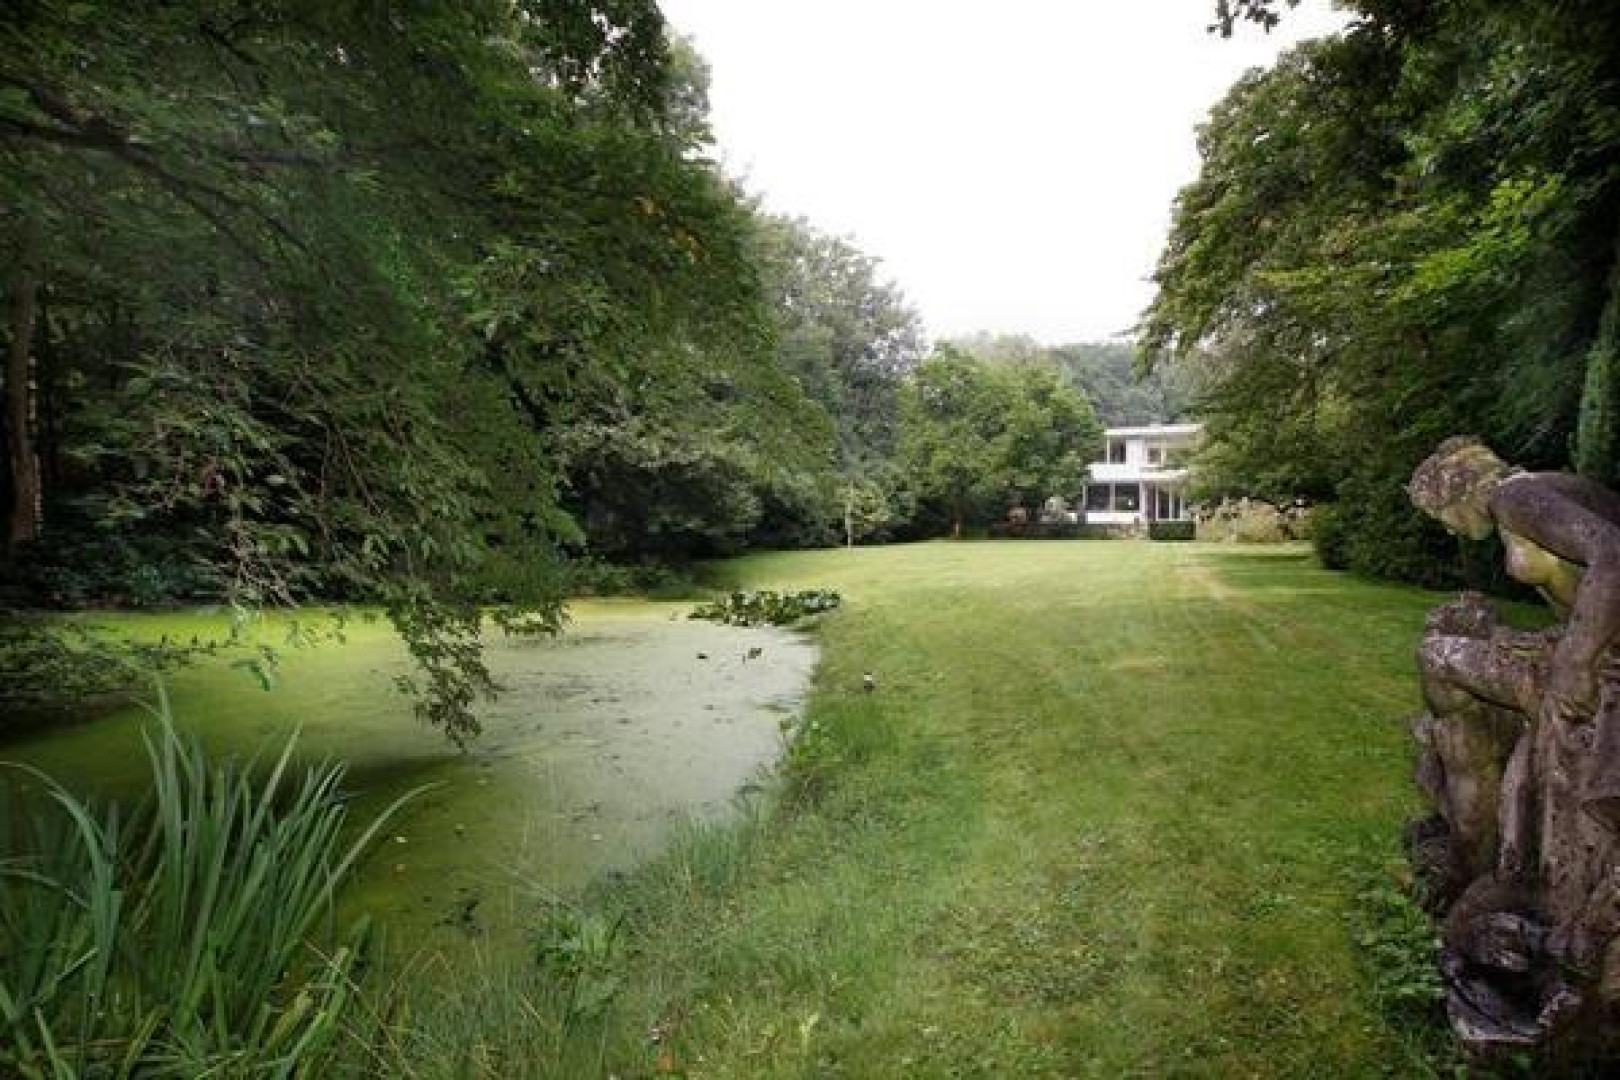 Totale prijsverlaging van half miljoen euro moet koper lokken voor villa Neelie Smit Kroes. Zie foto's!